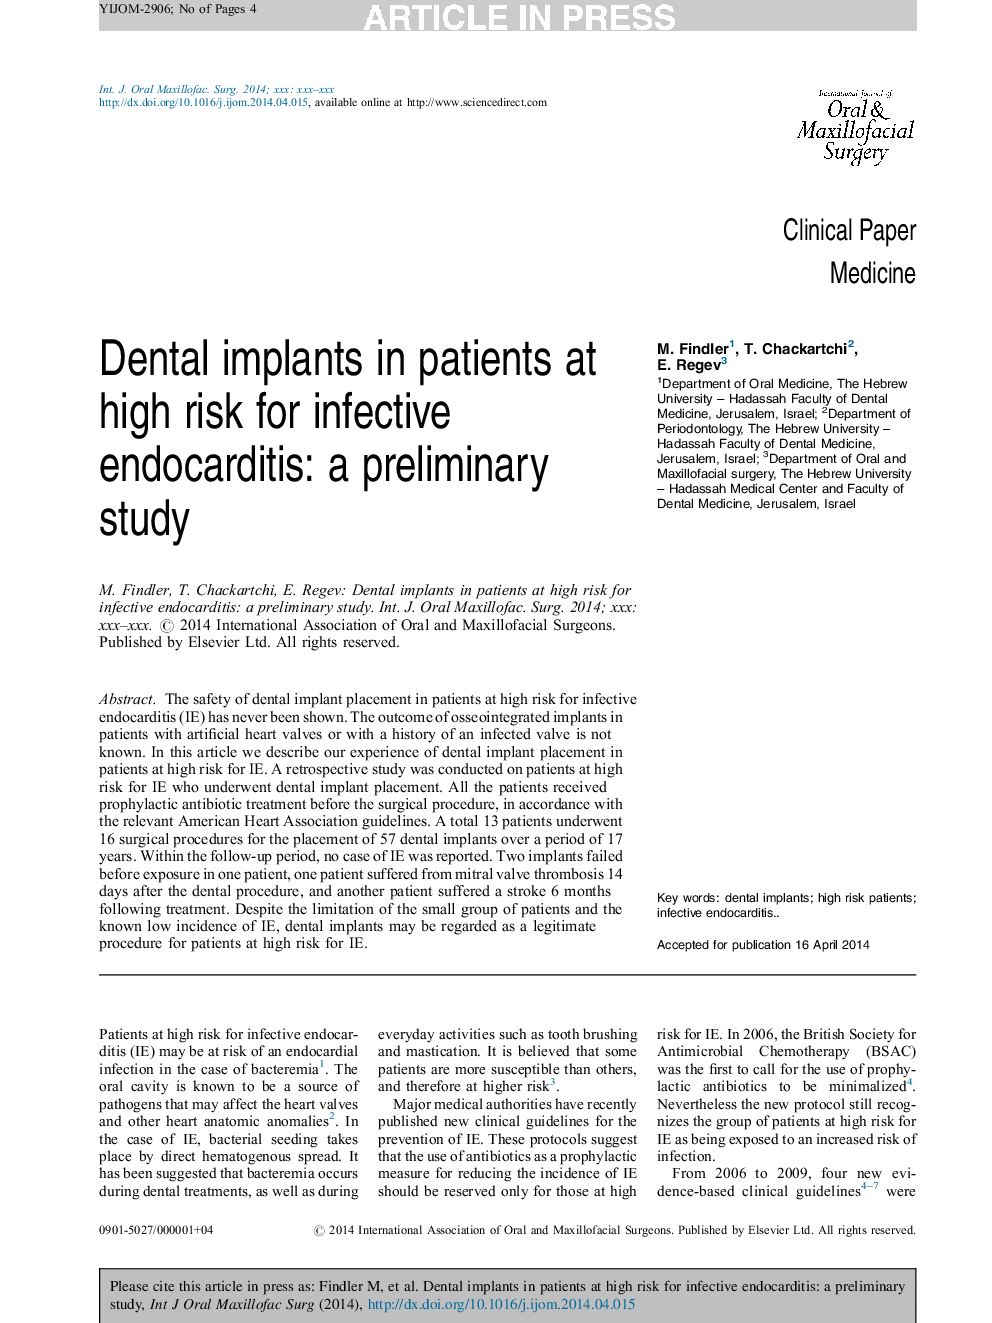 ایمپلنت های دندانی در بیماران مبتلا به اندوکاردیت عفونی بالا: یک مطالعه اولیه 